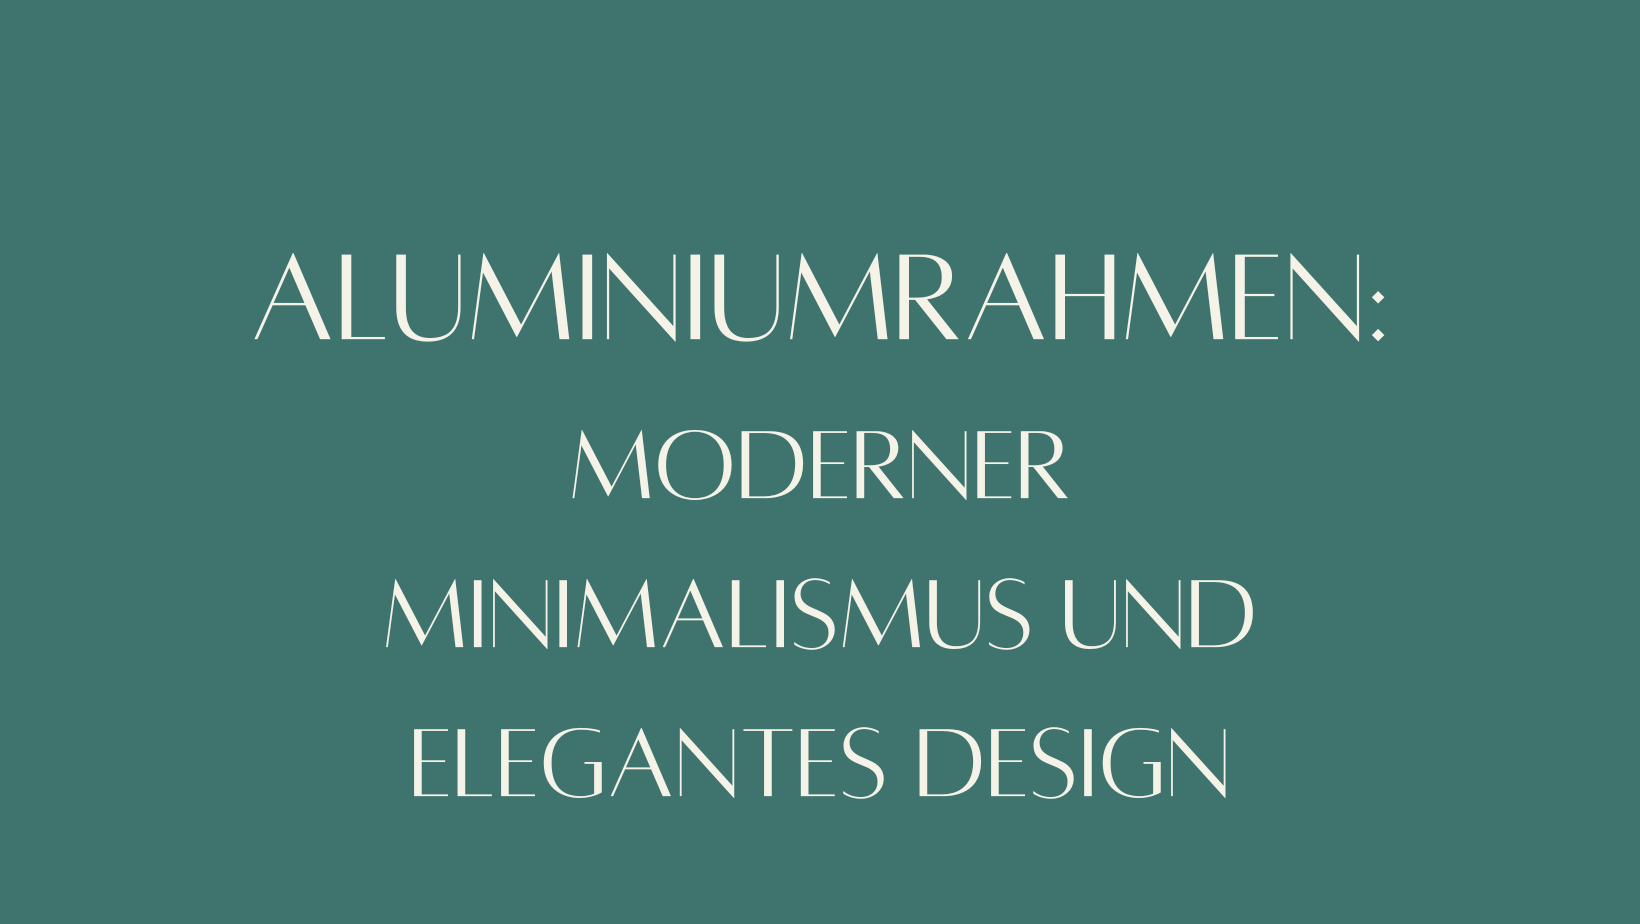 Aluminiumrahmen: Moderner Minimalismus und elegantes Design  